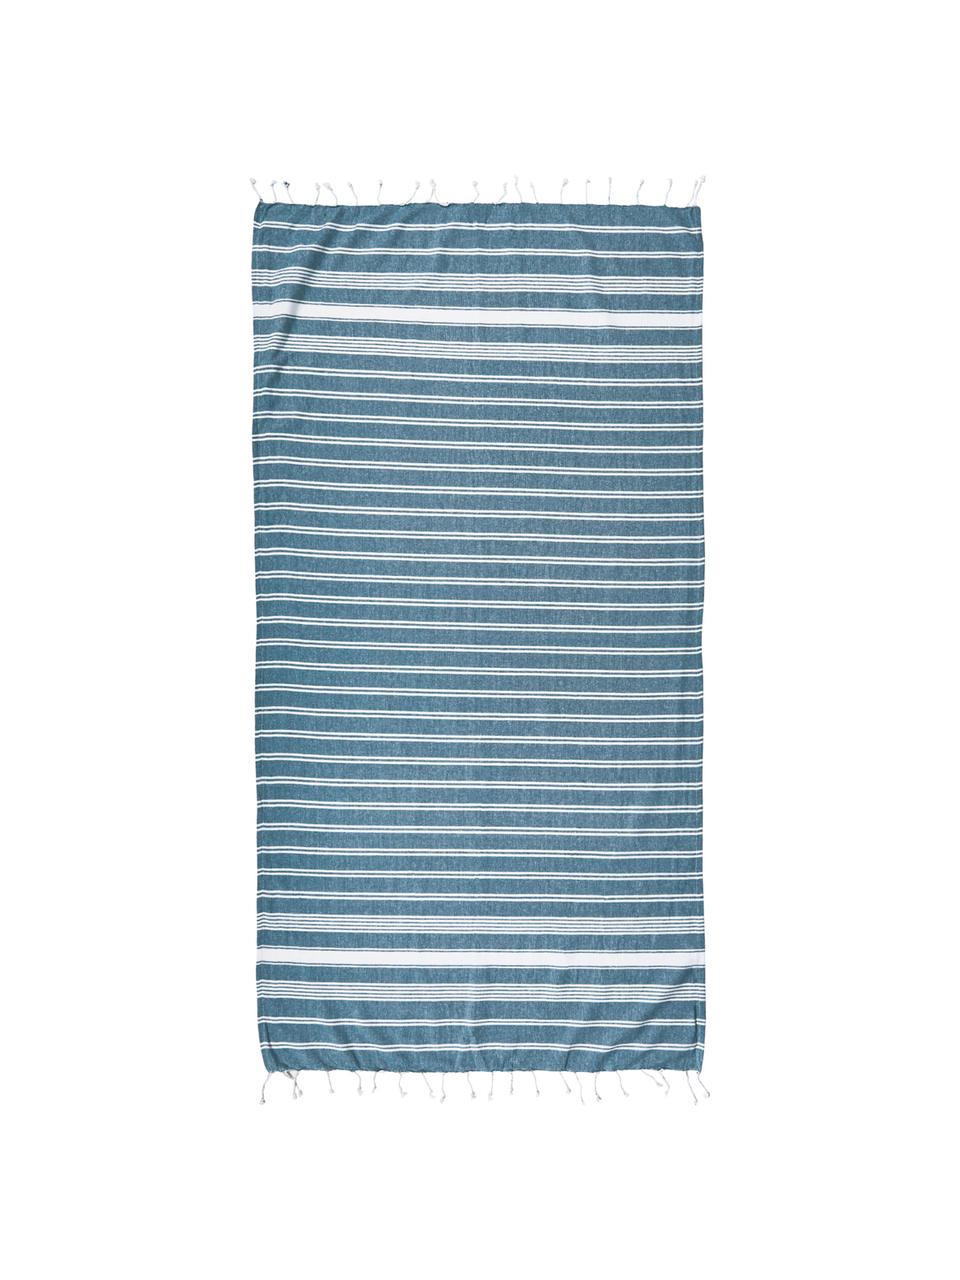 Gestreiftes Hamamtuch Surfside mit Fransenabschluss, 100% Baumwolle, Blau, Weiß, B 90 x L 170 cm